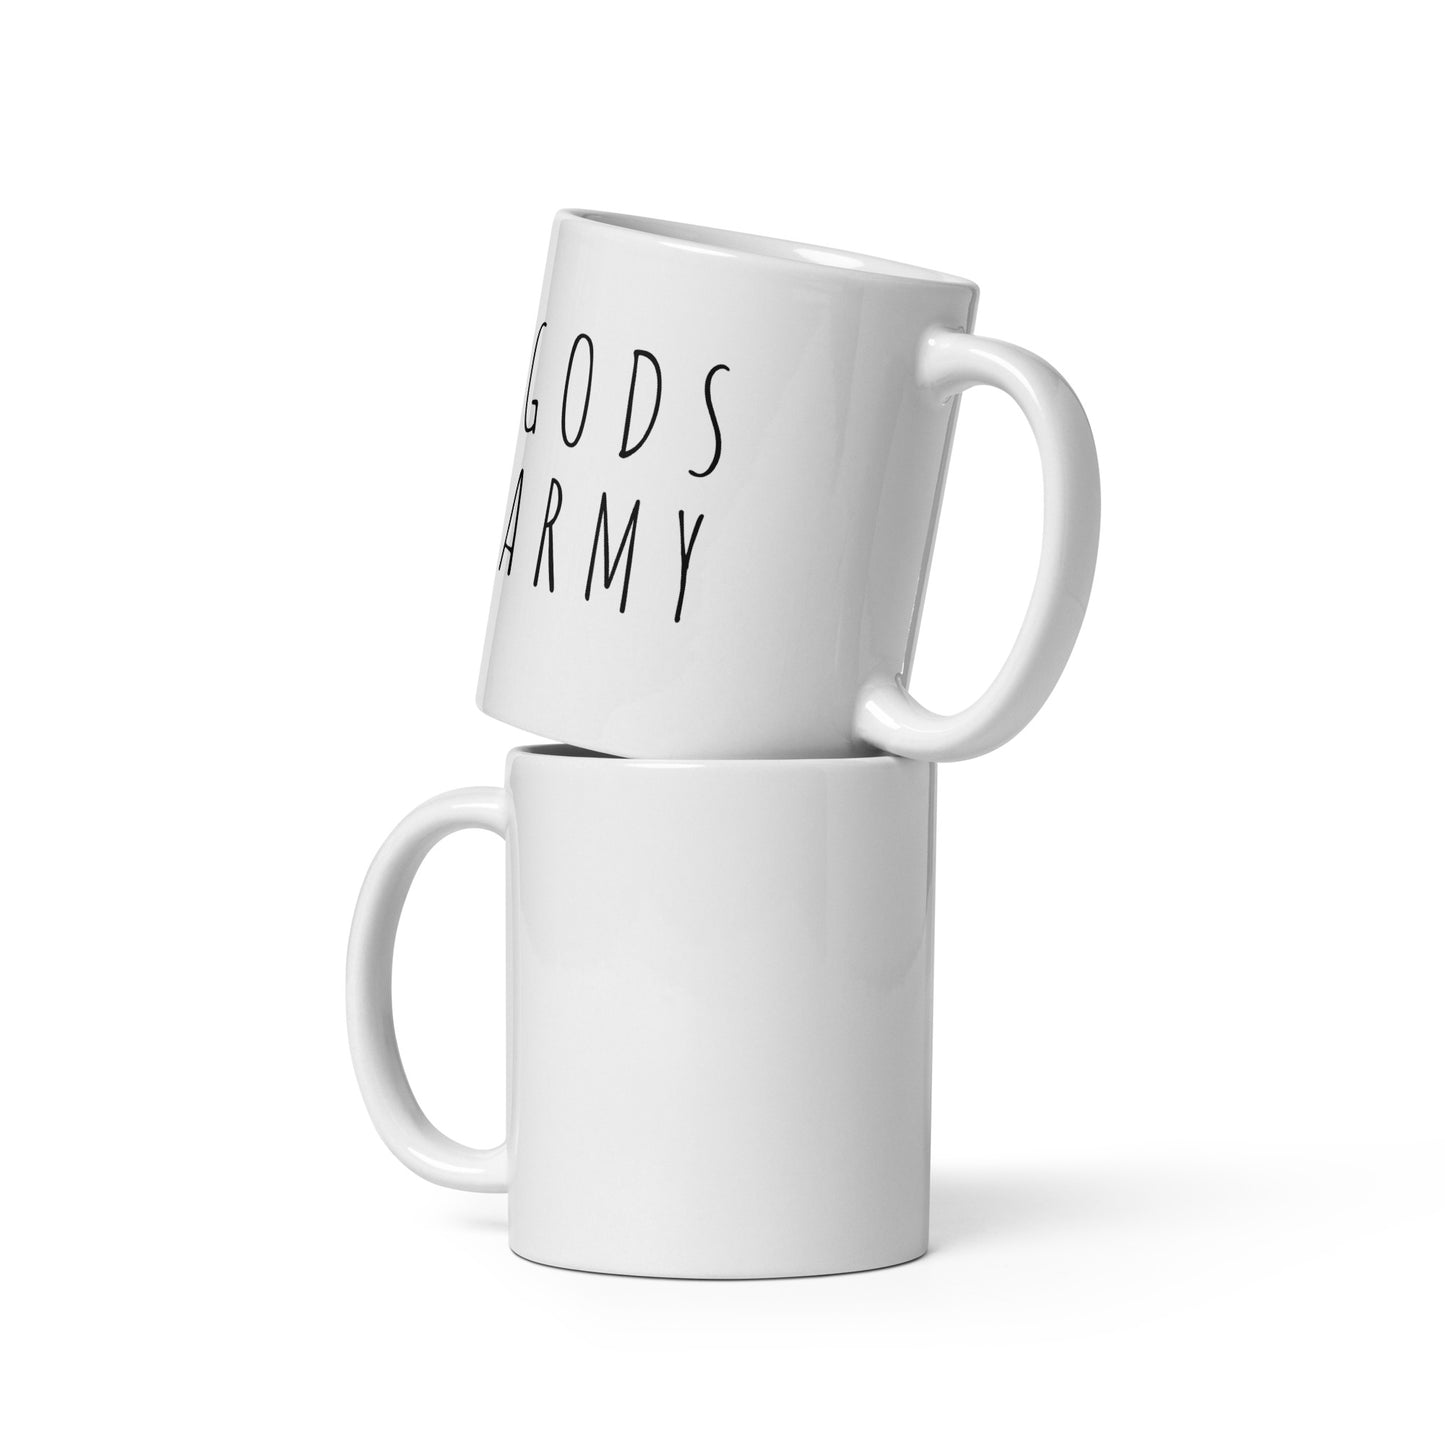 GODS ARMY - White glossy mug